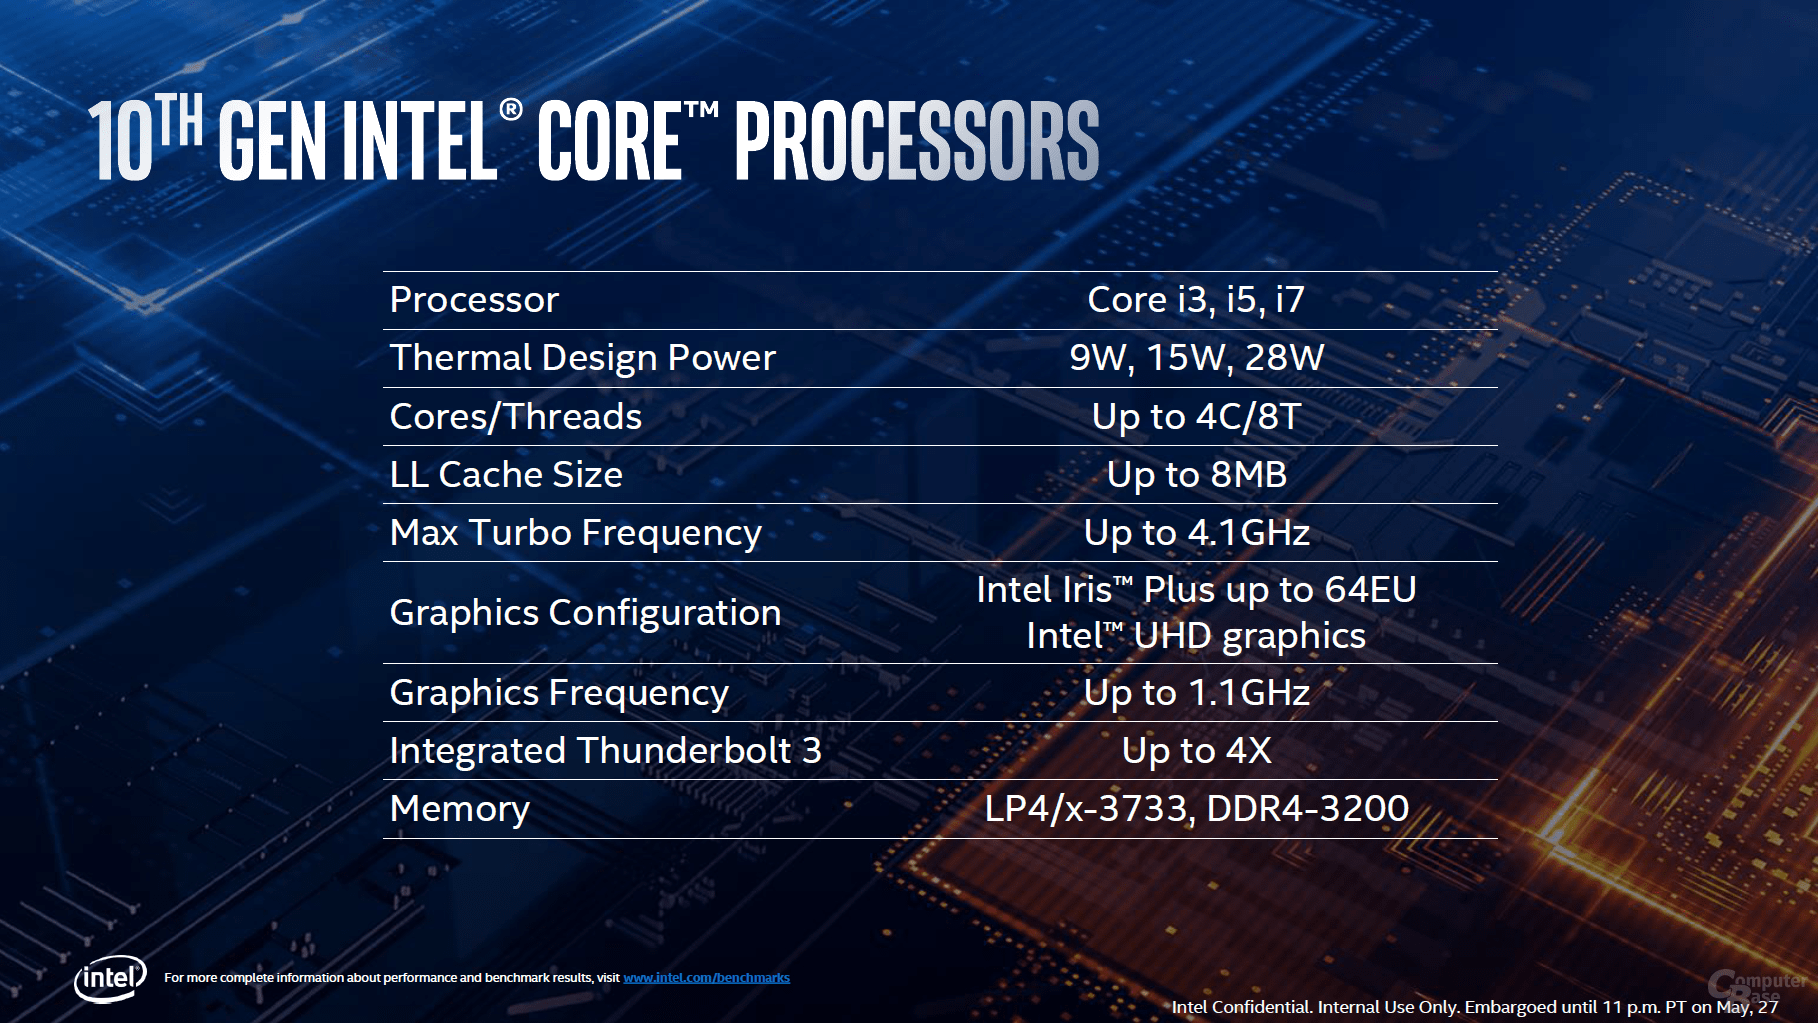 10th Gen Intel Core